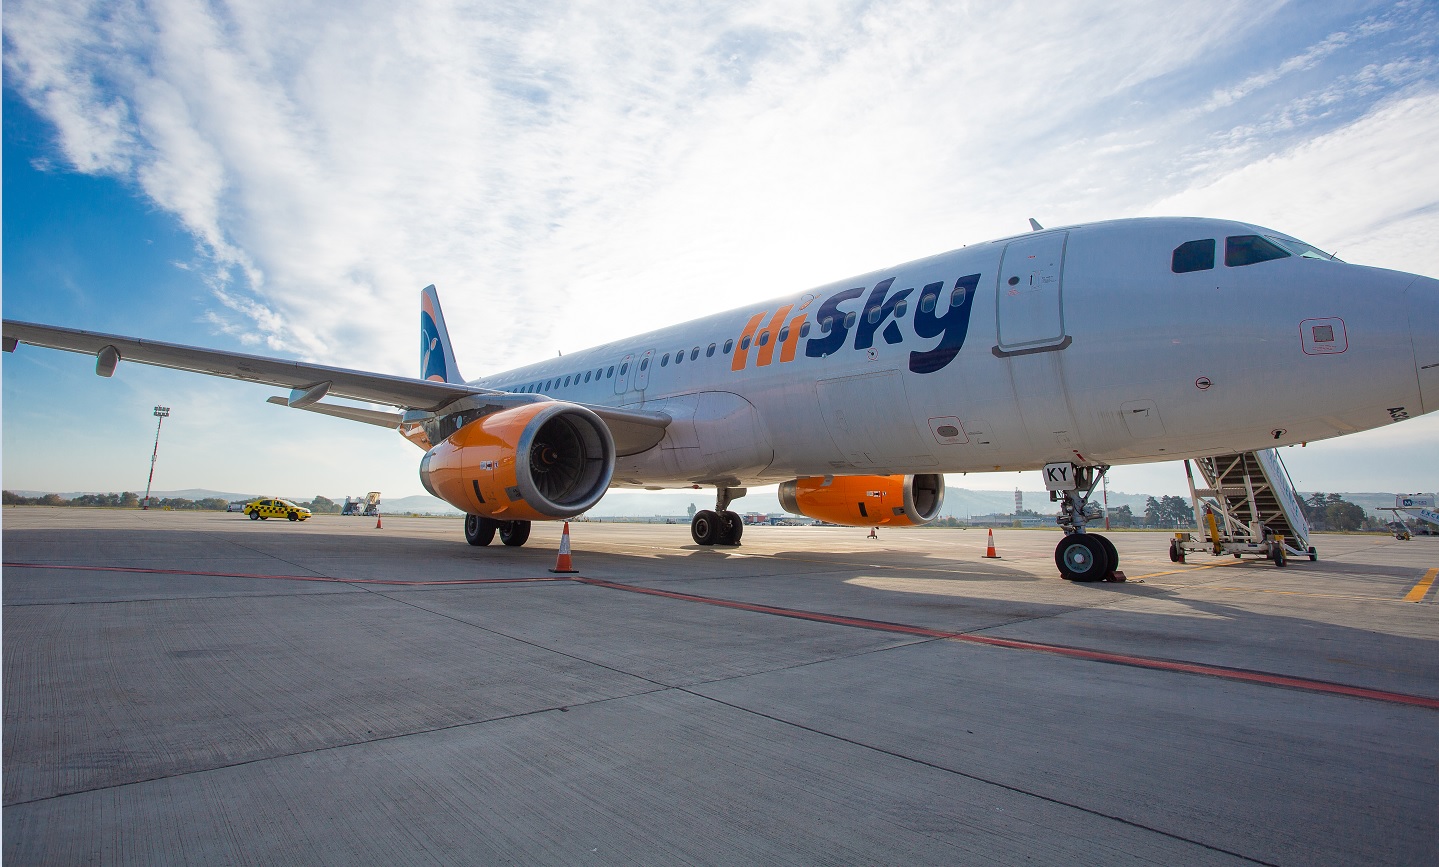 Aeroportul Cluj anunță noi curse charter pentru vara 2022. Sursa foto: Aeroportul Cluj